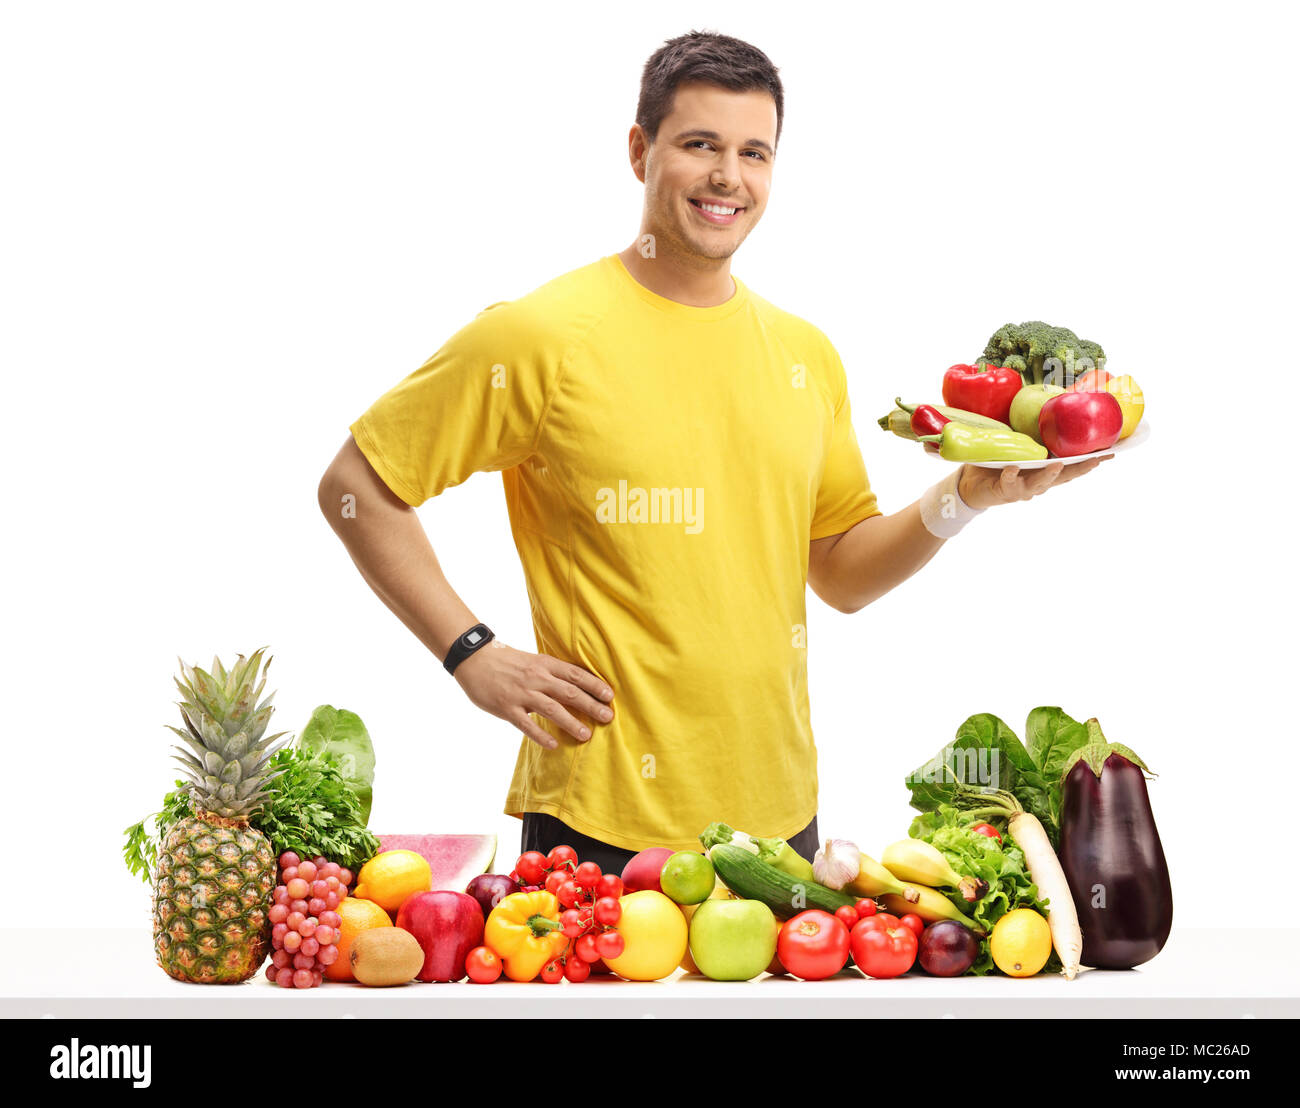 Junge Mann hinter einem Tisch mit Obst und Gemüse, die eine Platte auf weißem Hintergrund Stockfoto